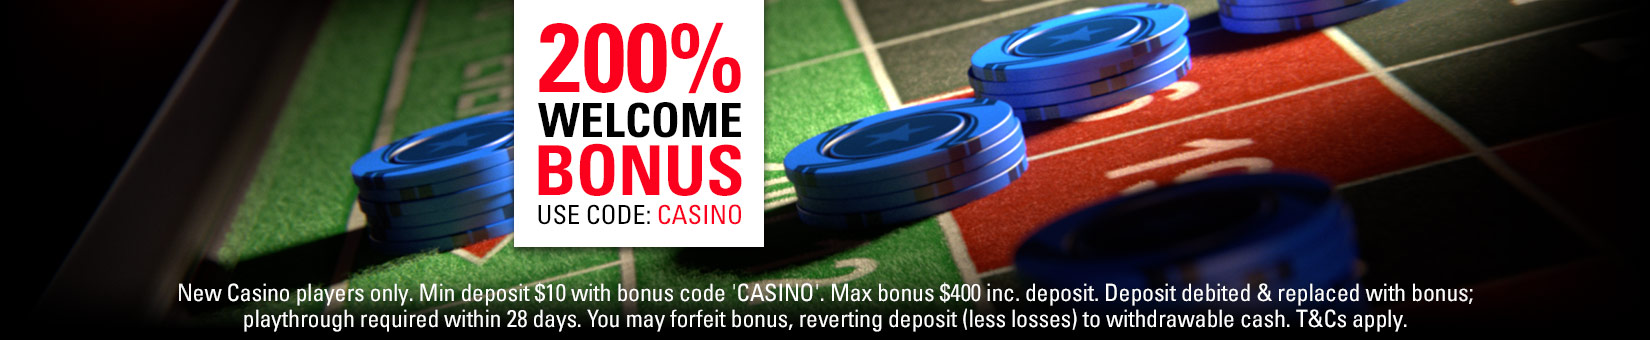 Full Tilt Casino Bonus